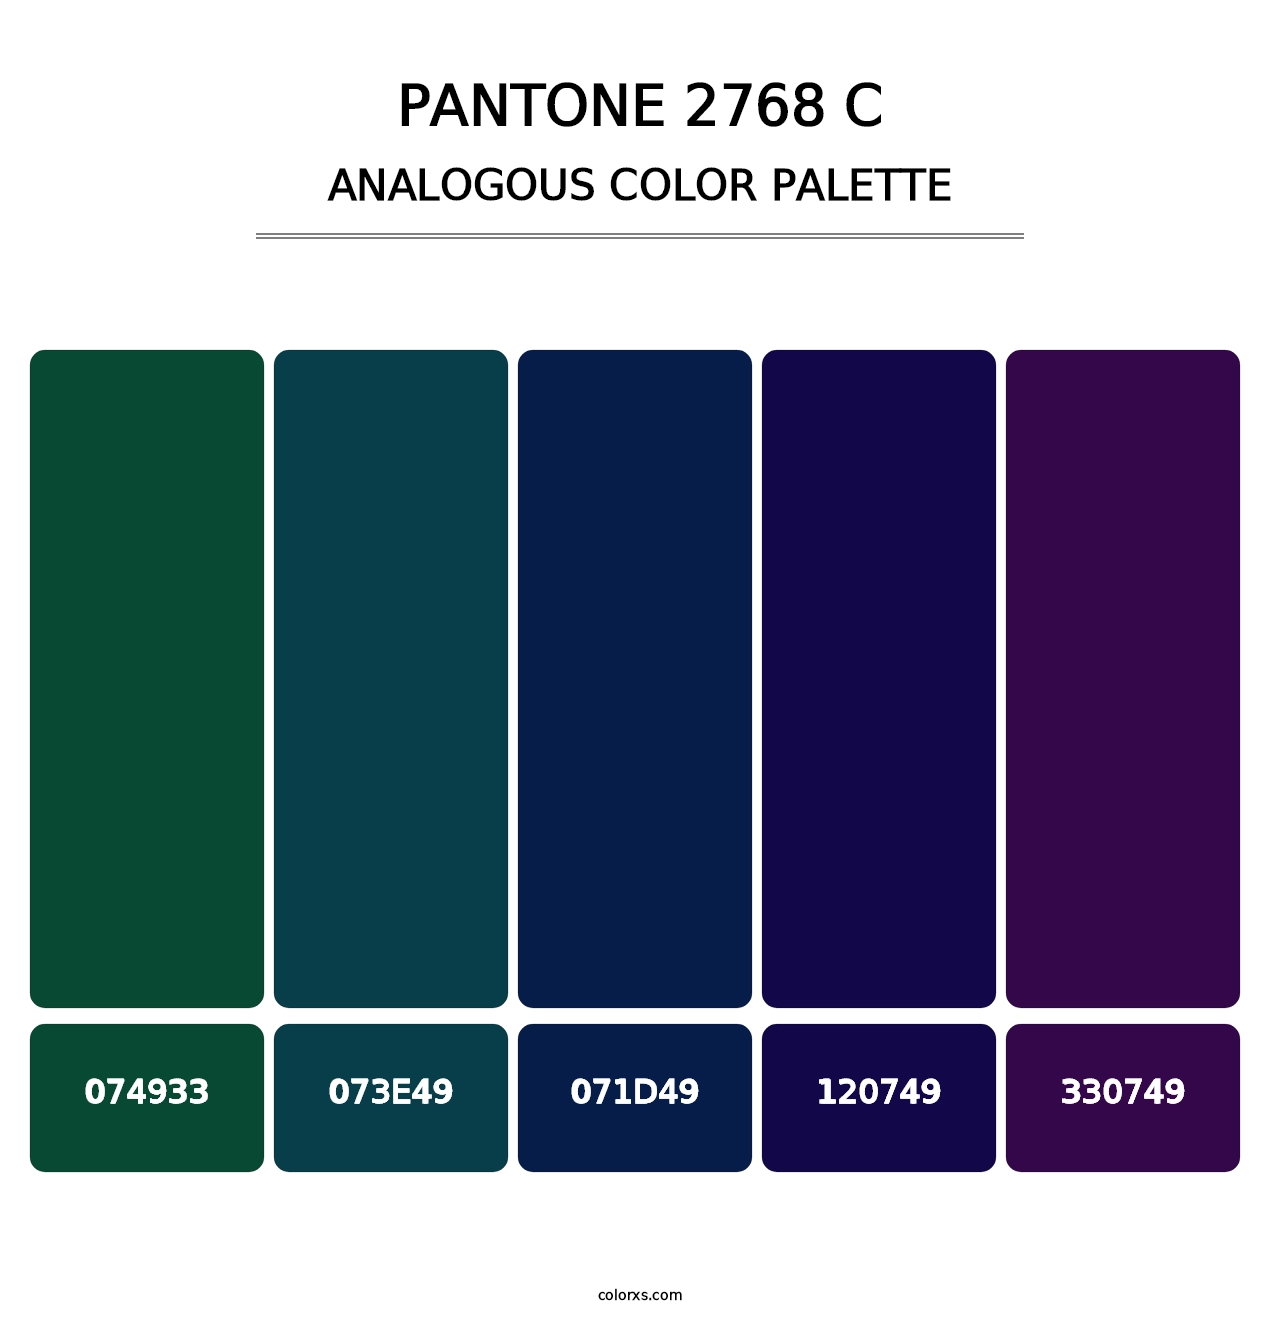 PANTONE 2768 C - Analogous Color Palette